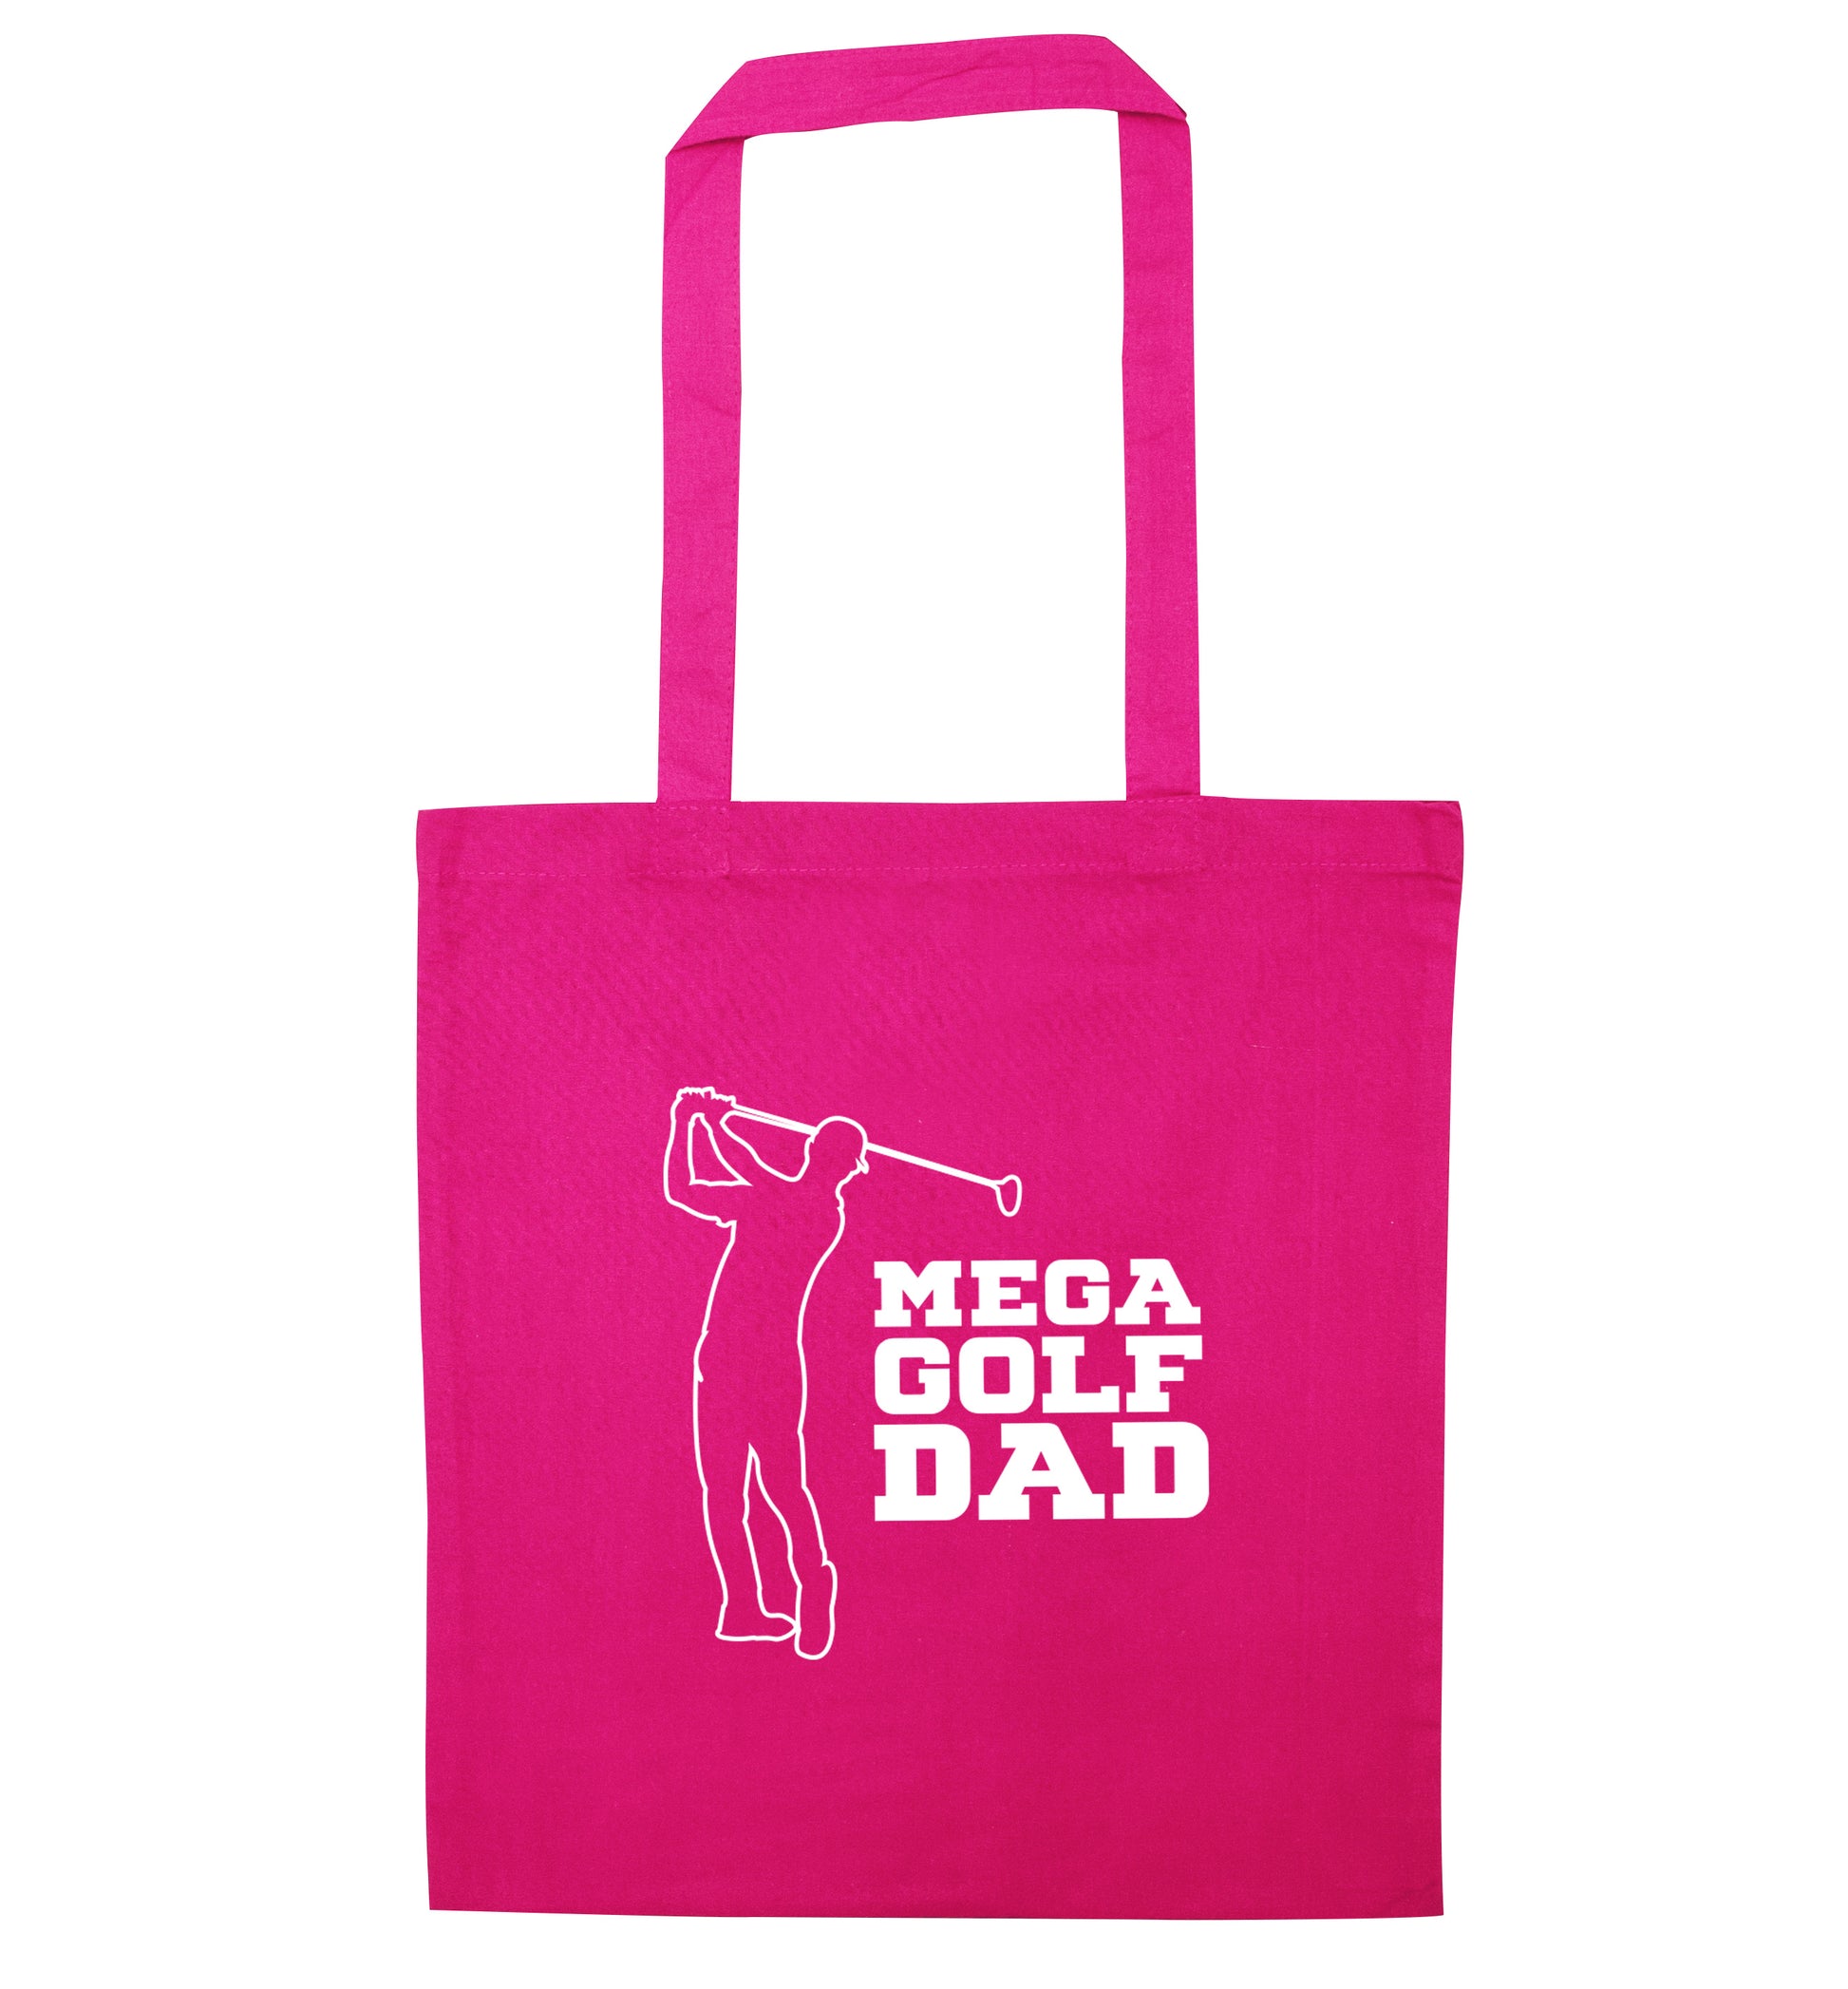 Mega golfing dad pink tote bag